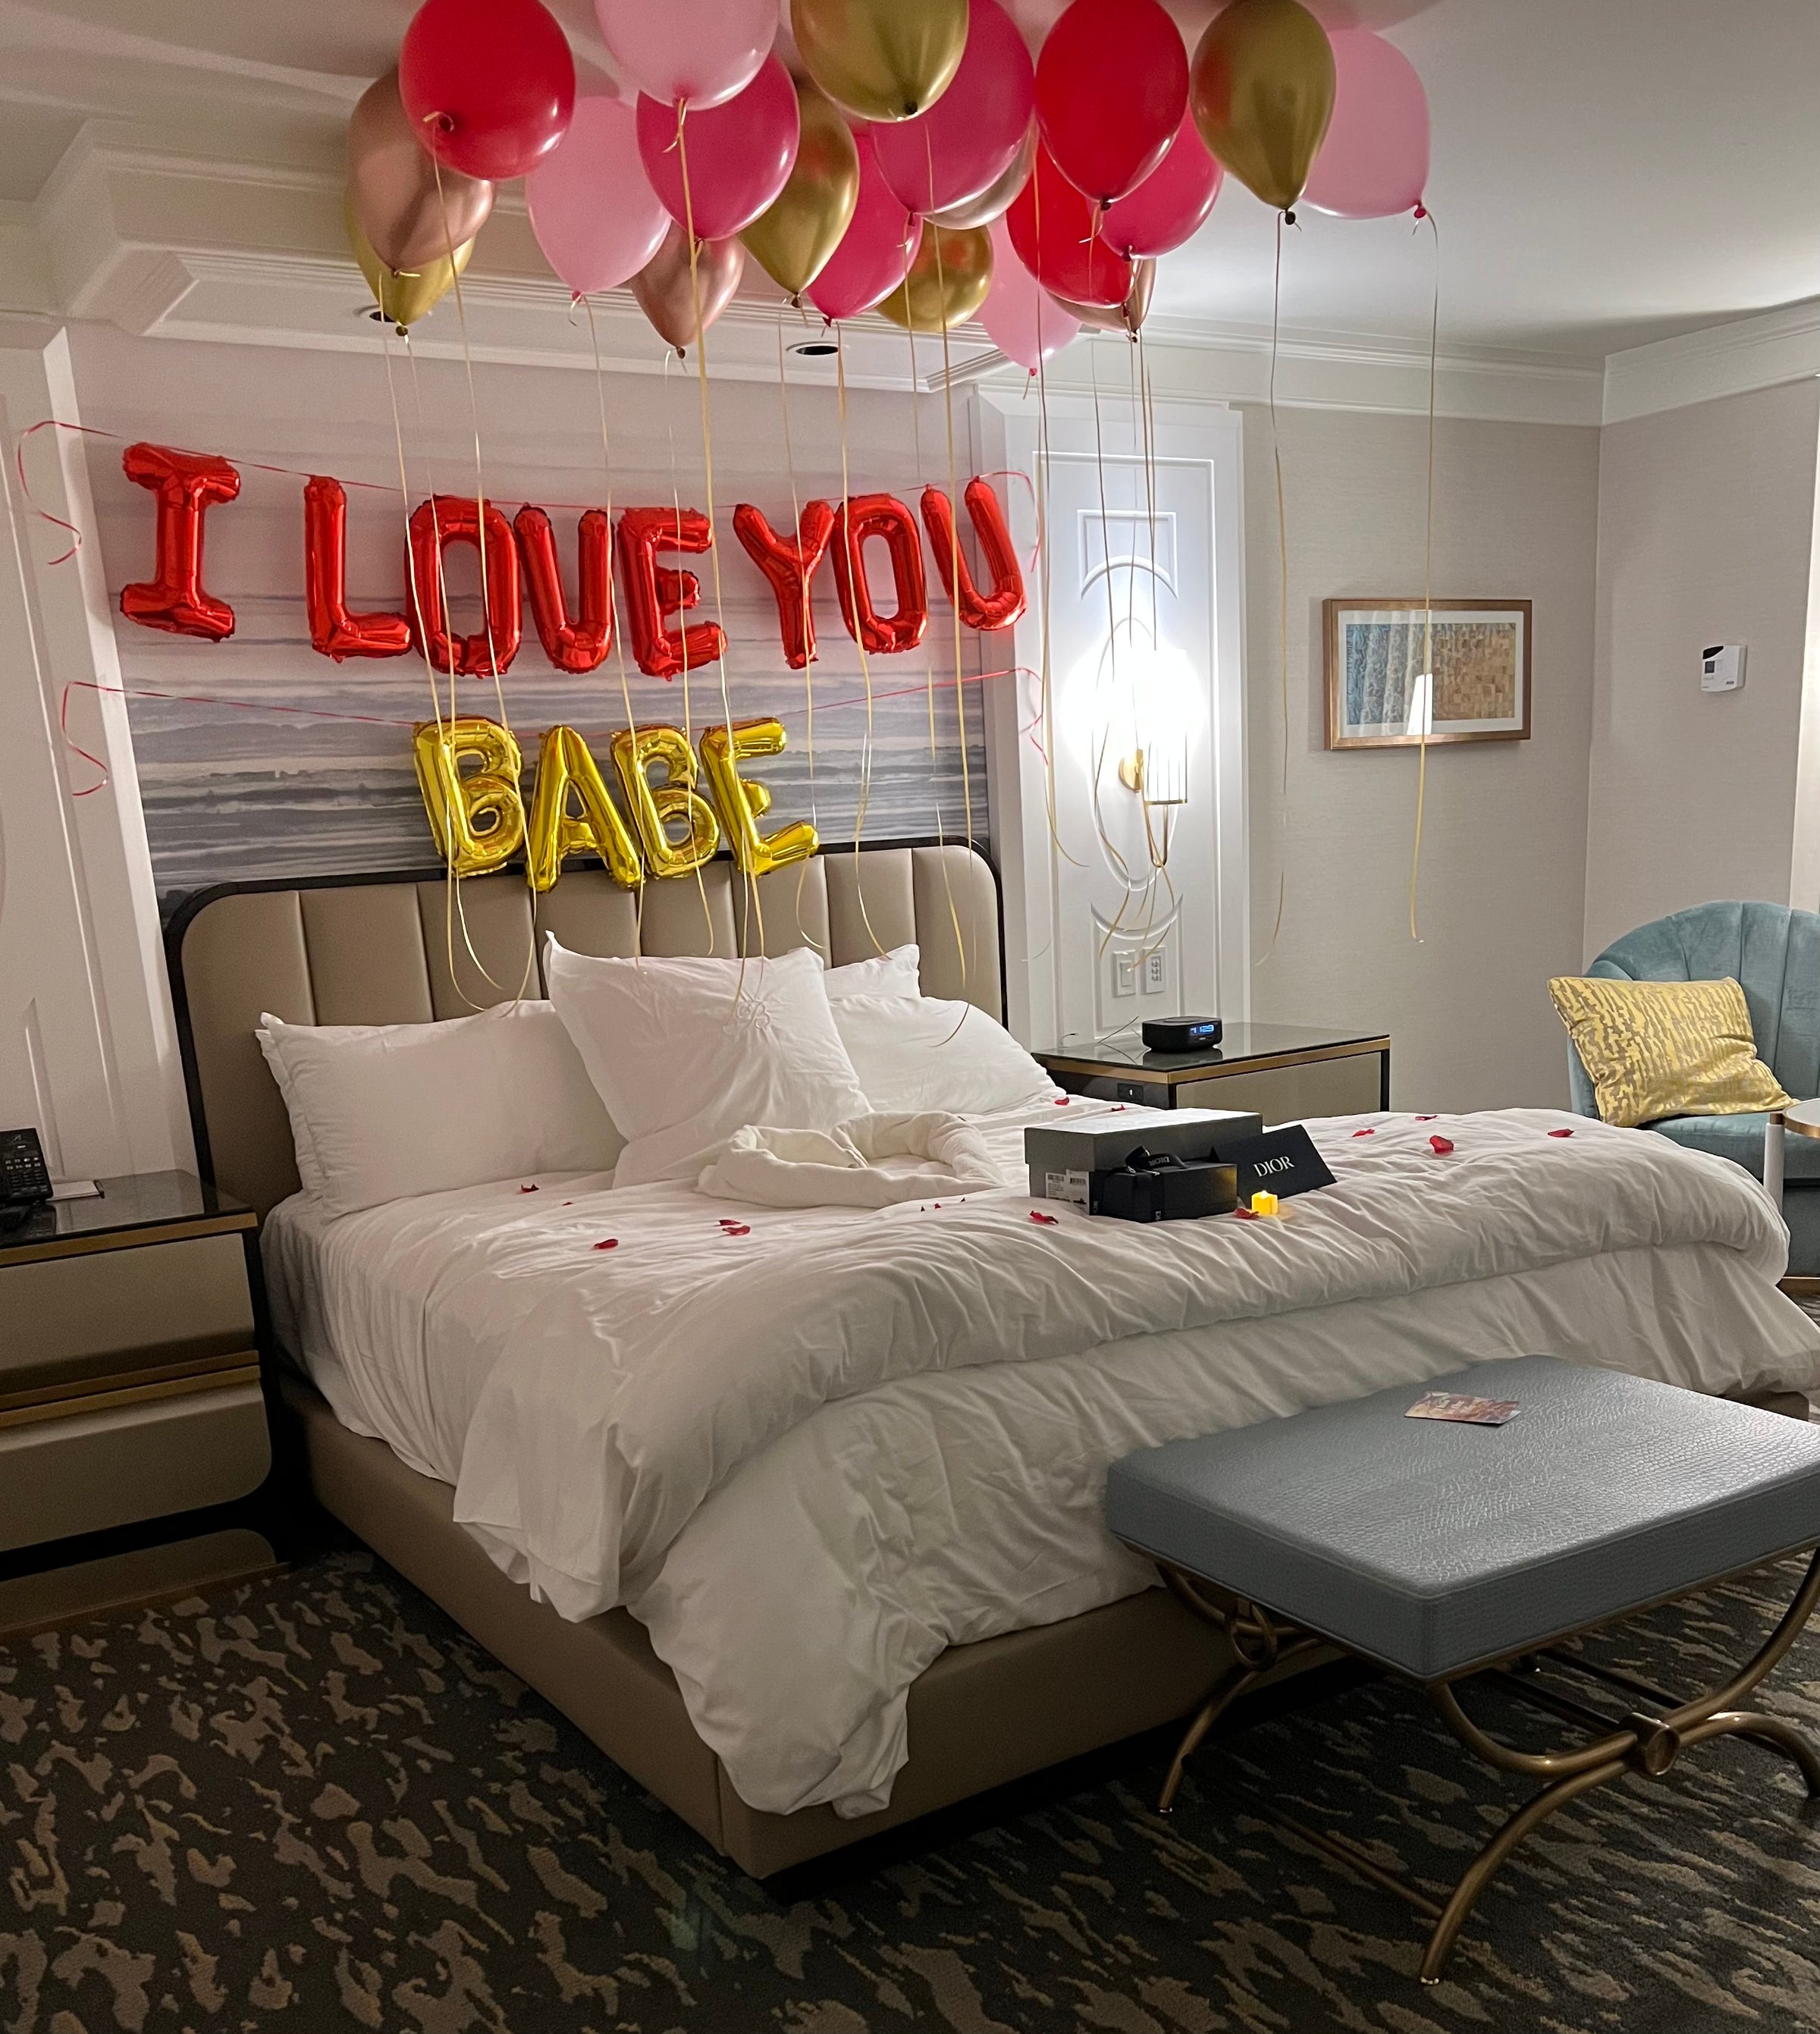 Hotel Room Decor - Balloon Pros Las Vegas